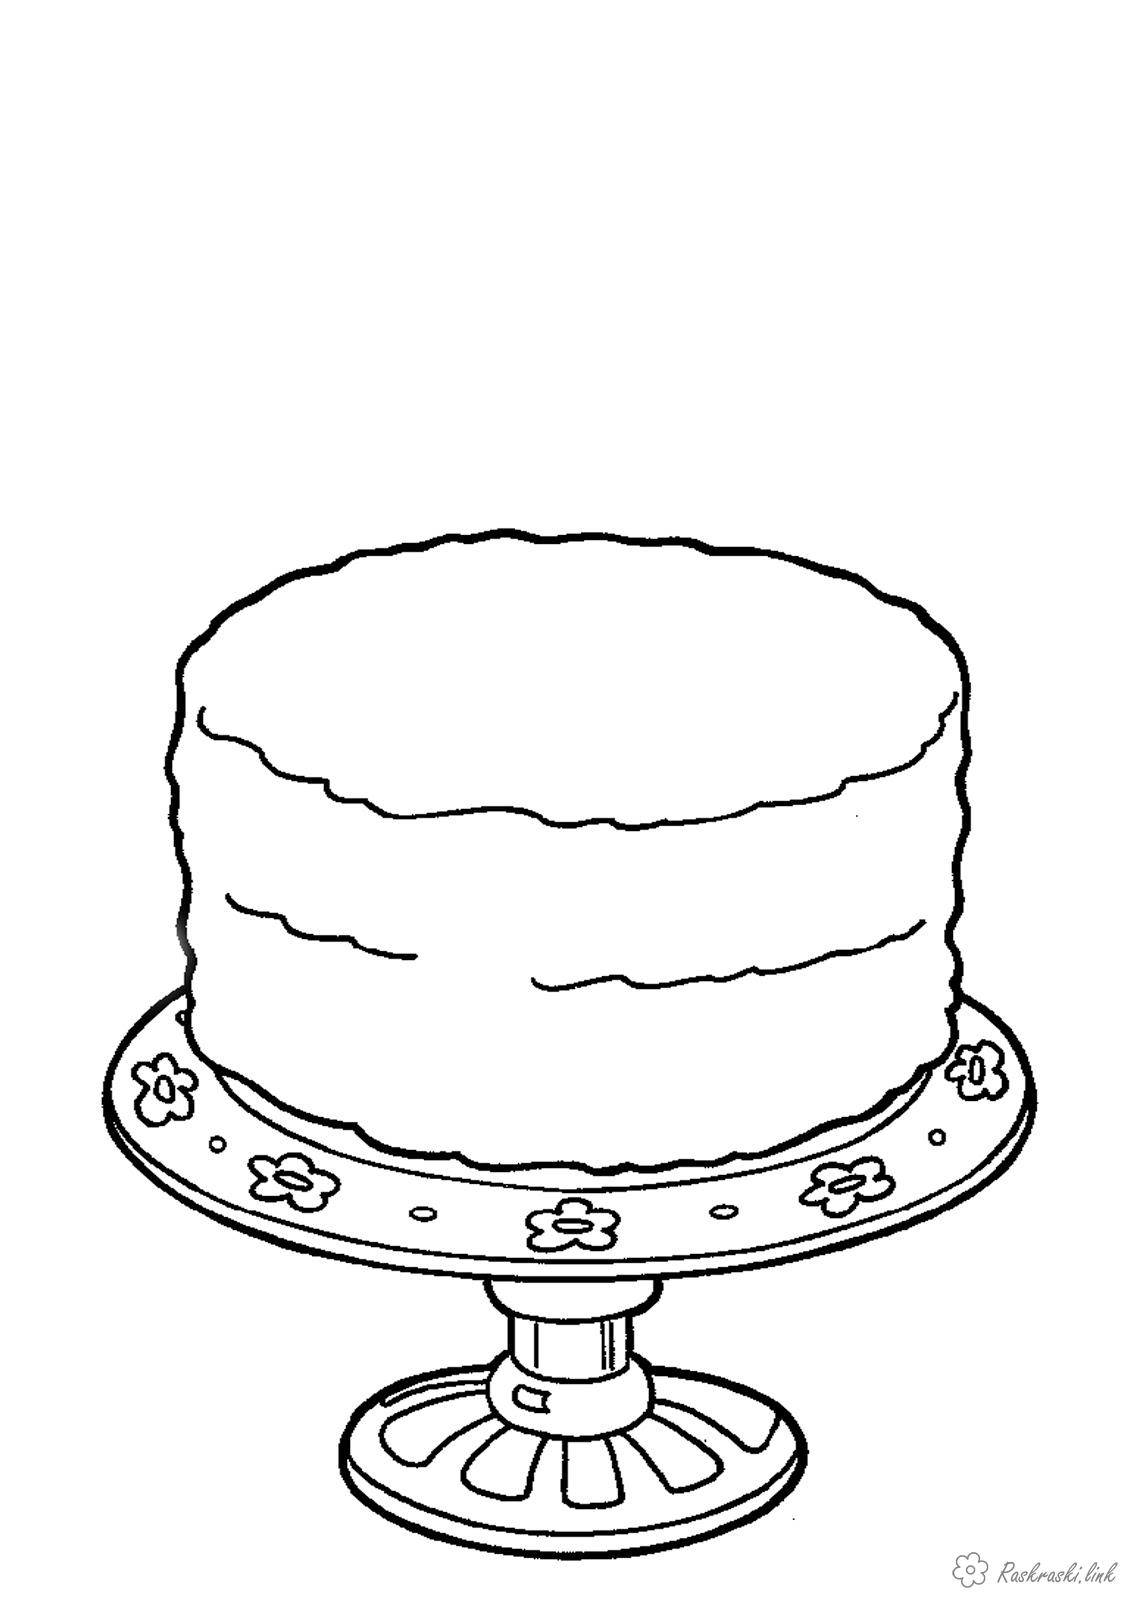 Розмальовки Торти та тістечка  Медовий, торт, лежить на красивому блюдце, розфарбування